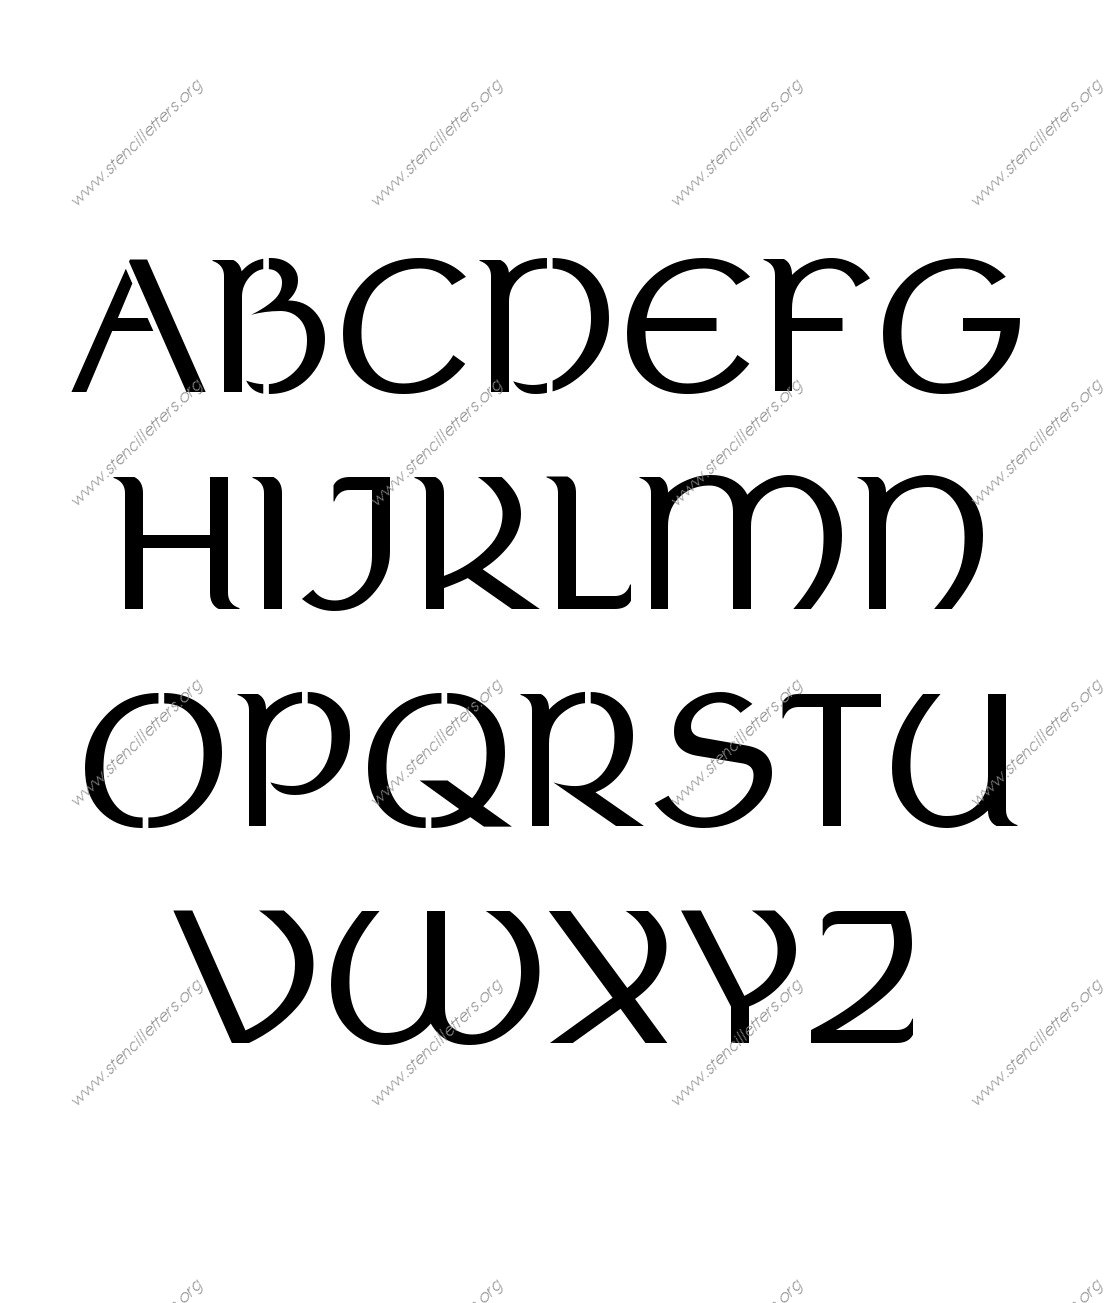 Ancient Celtic A to Z alphabet stencils